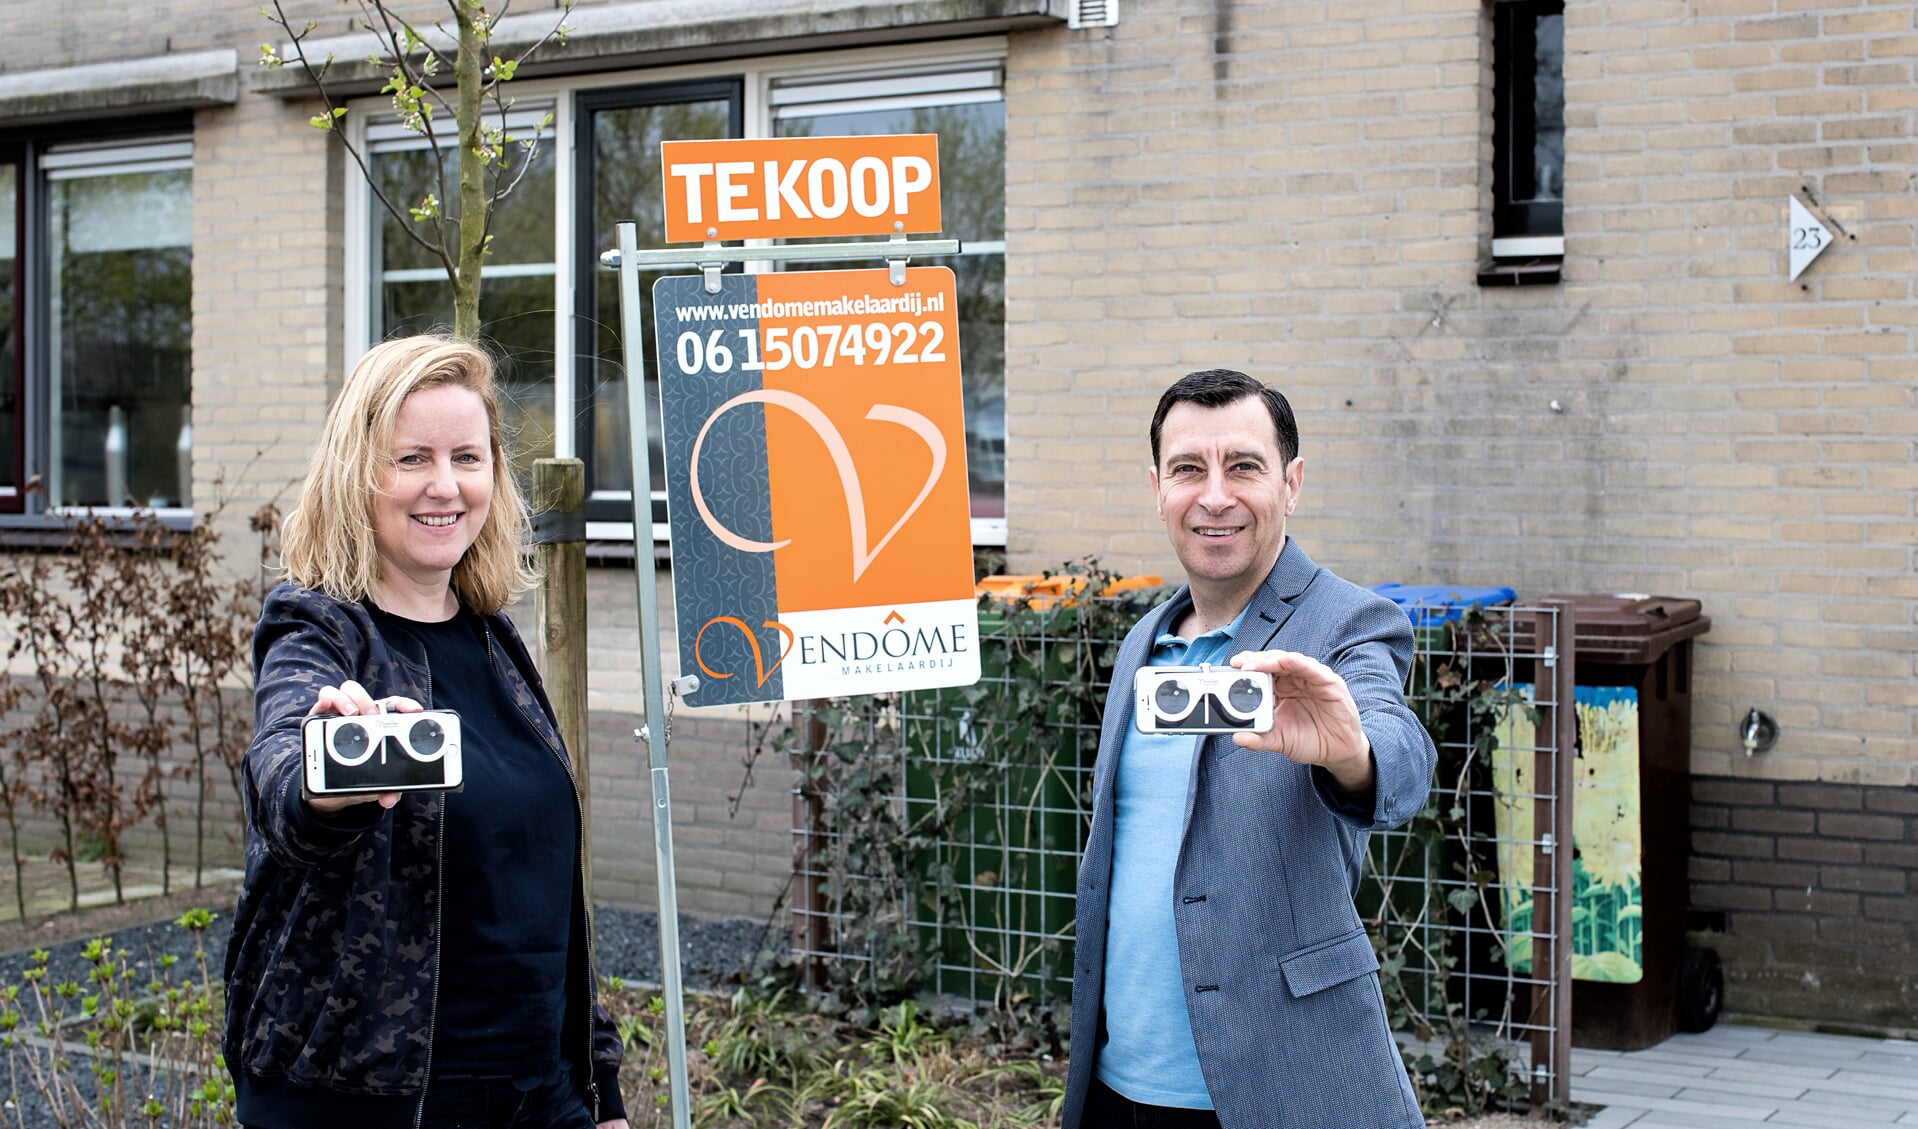 Patrick en Karin Iste met VR brillen voor een woning aan de Lutilistate in Ede.